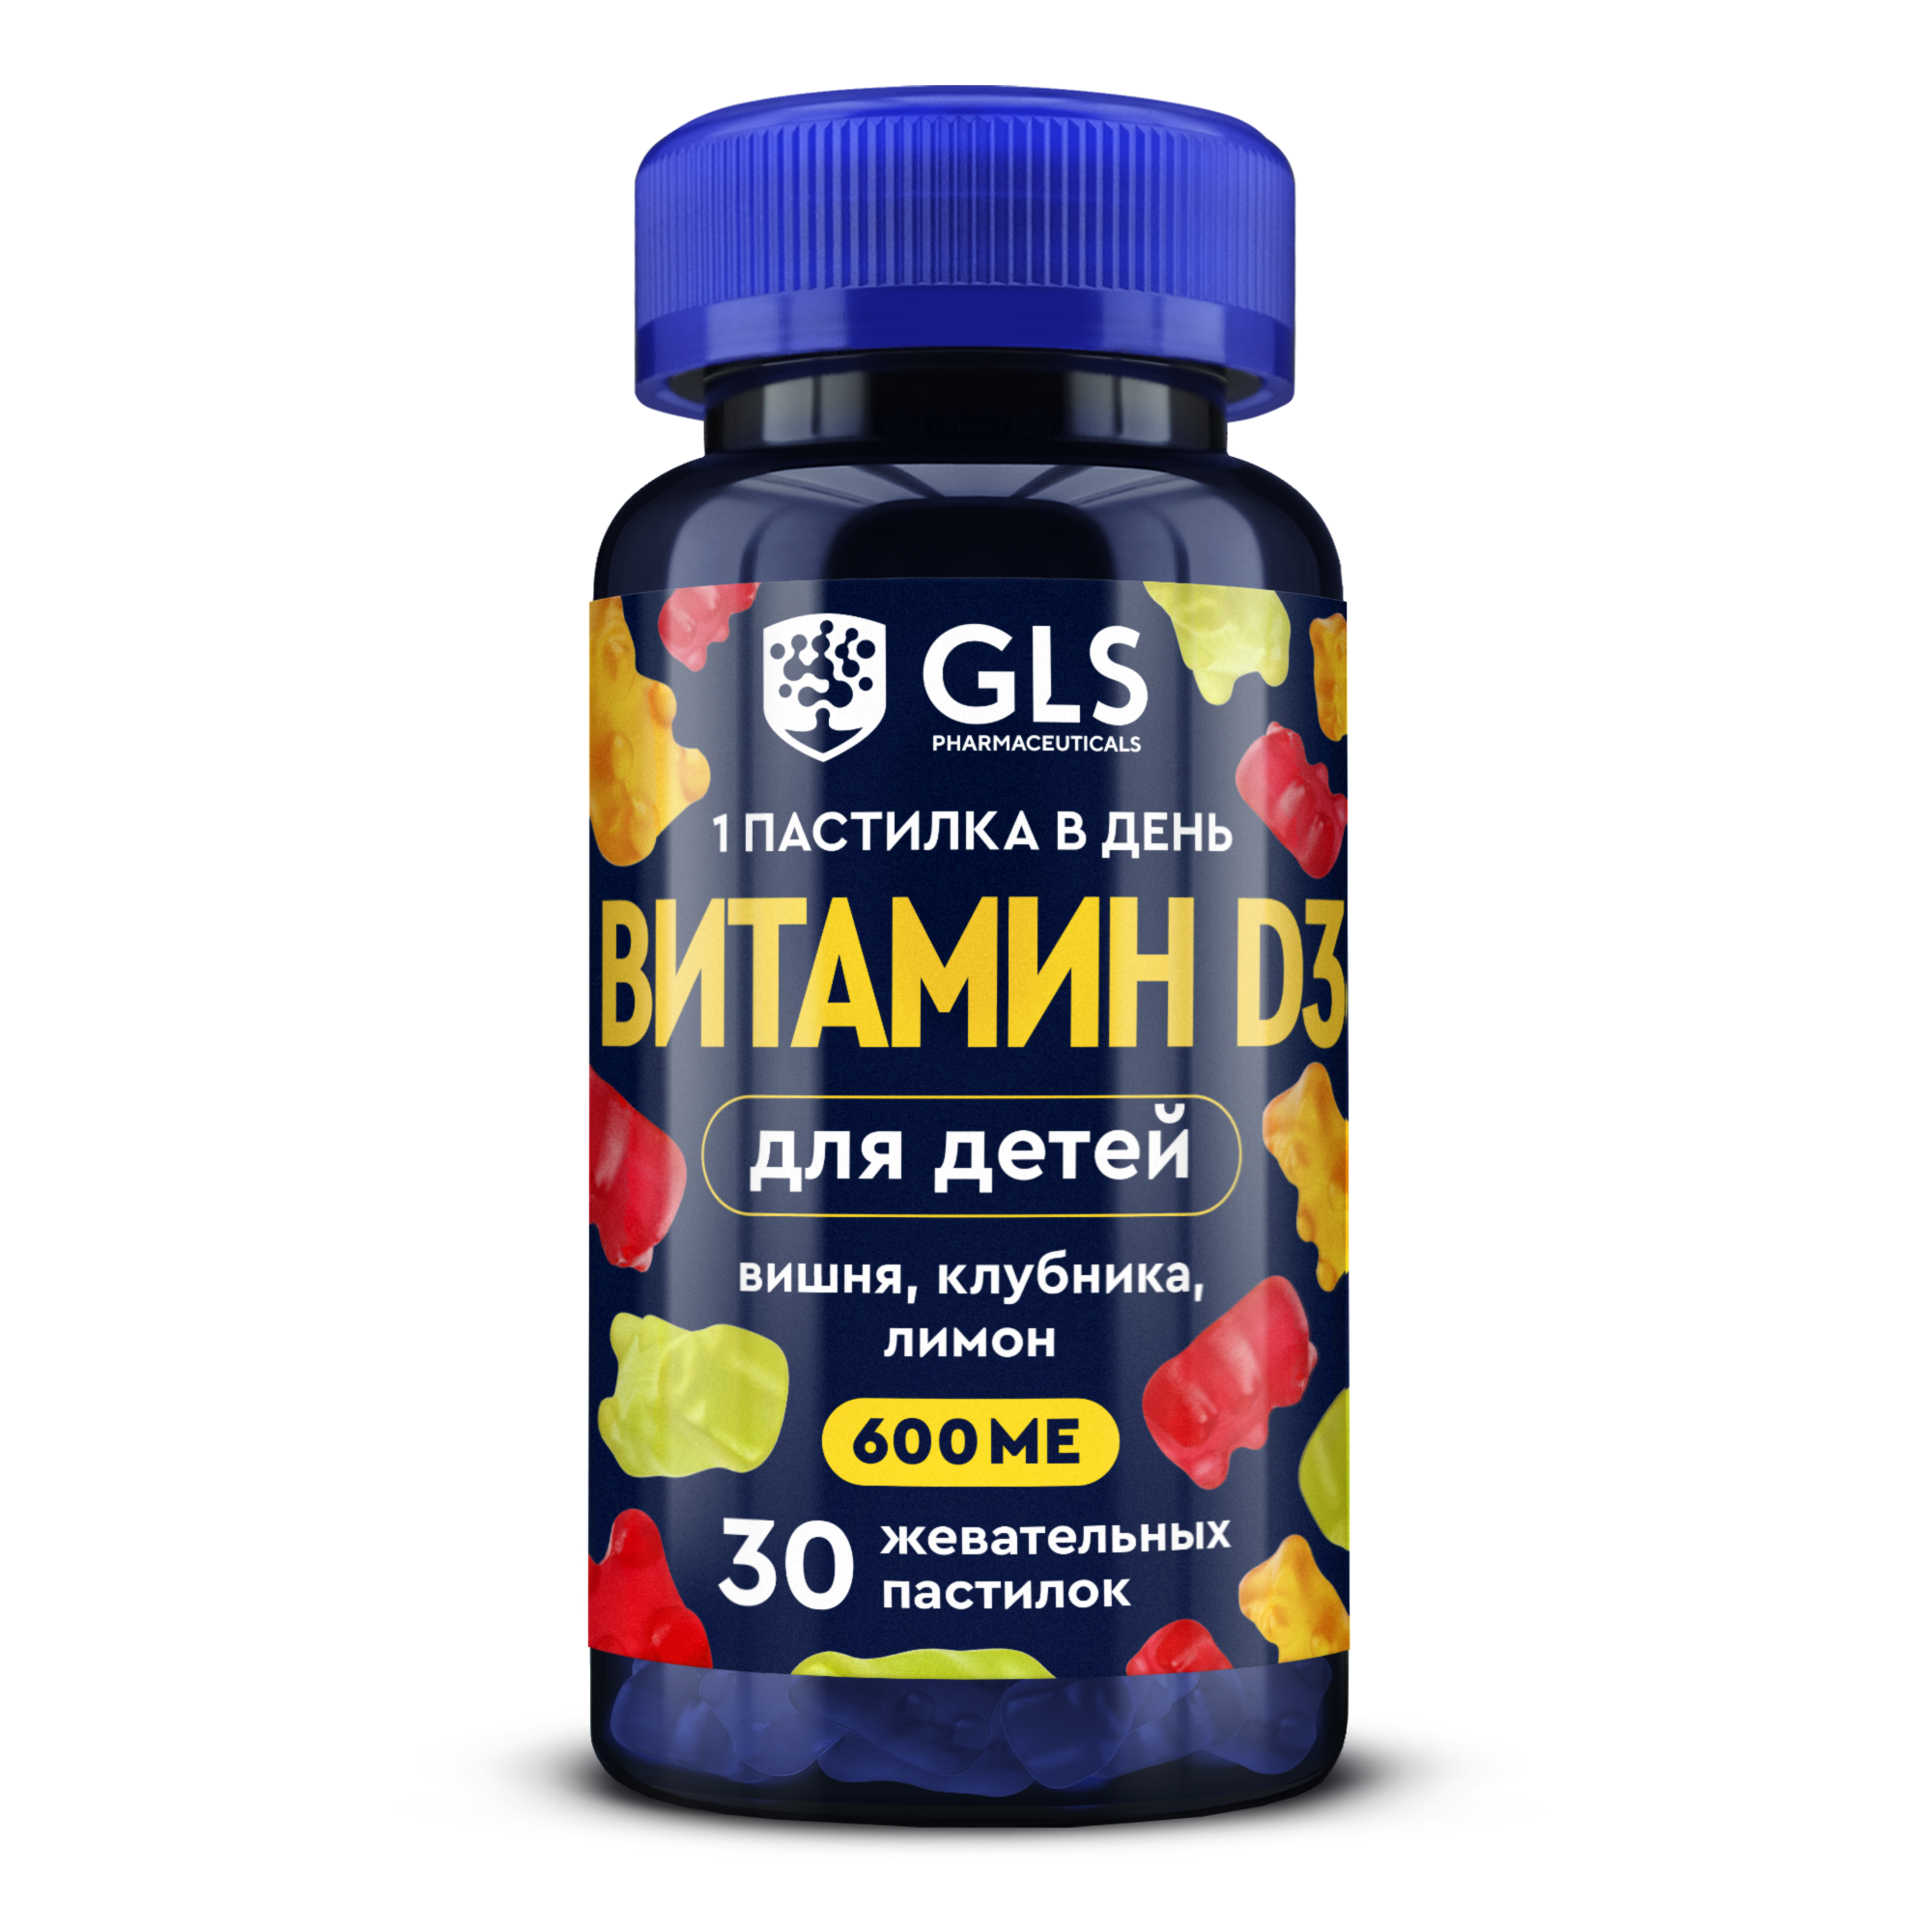 Gls витамин д3. Витамины GLS Pharmaceuticals. Витамины в комплекс GLS. GLS витамины производитель. B5 GLS витамины.